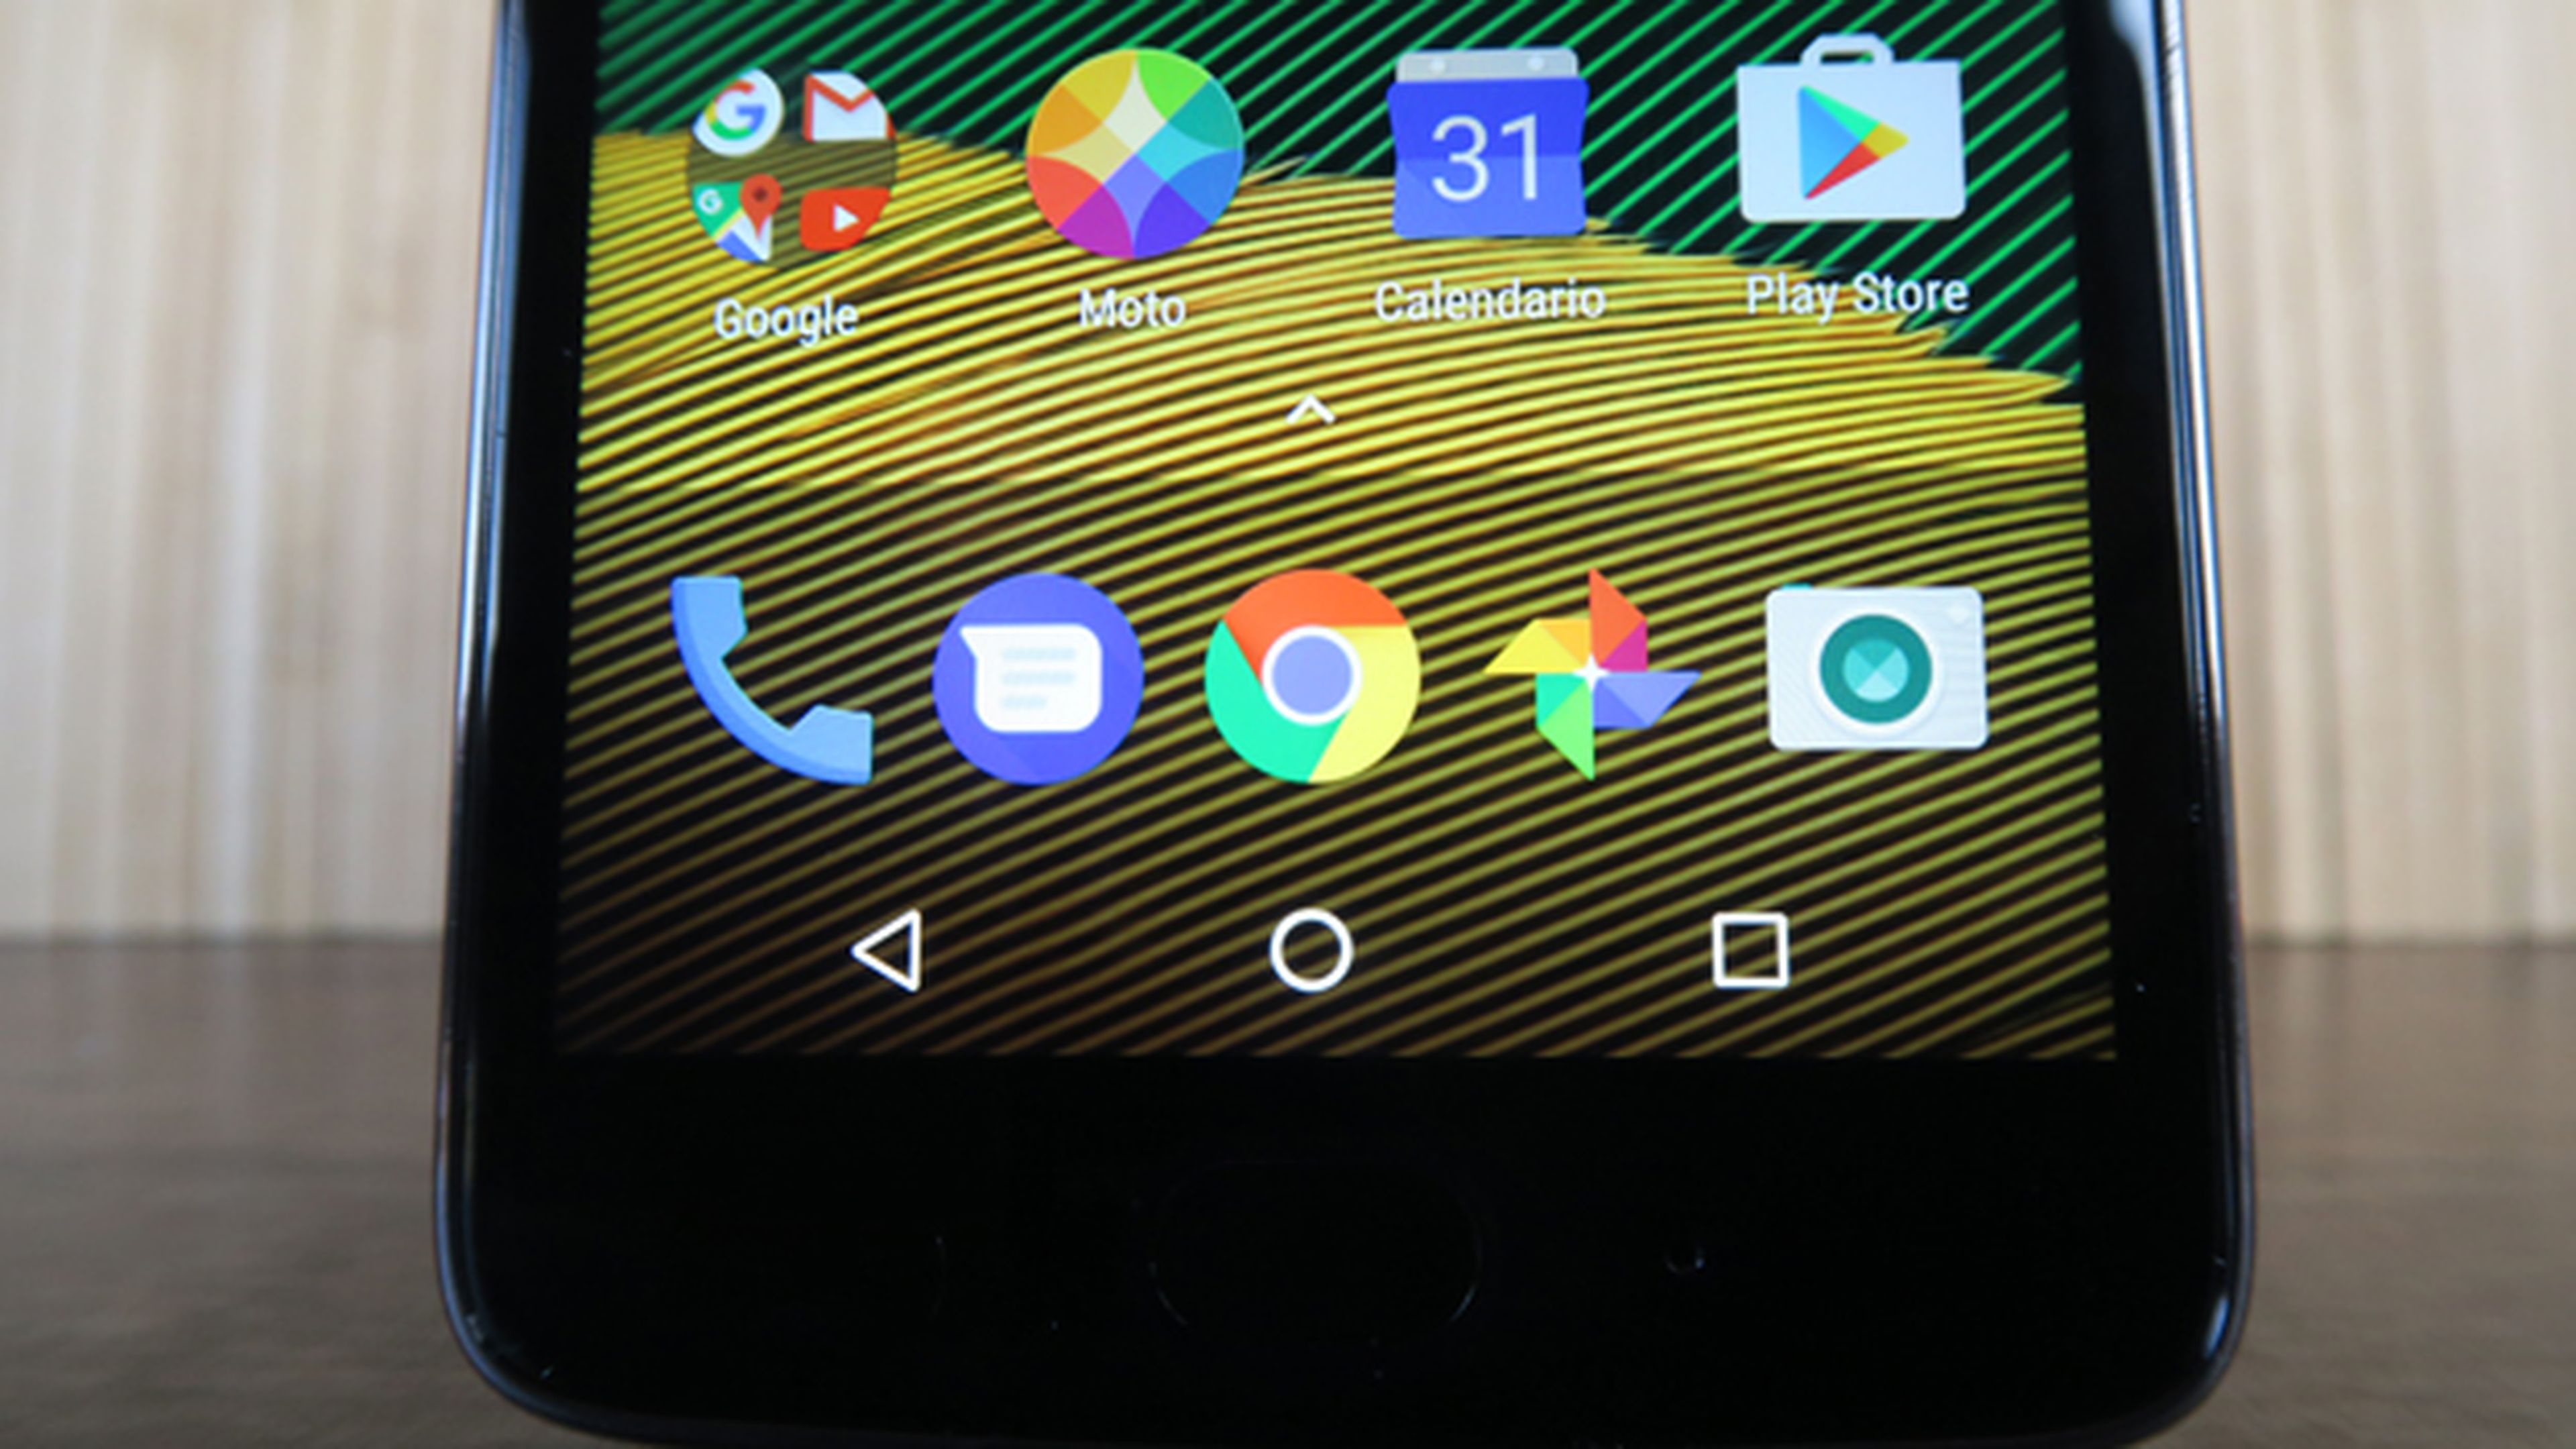 Sigamos con el análisis del Motorola Moto G5 hablando de la pantalla